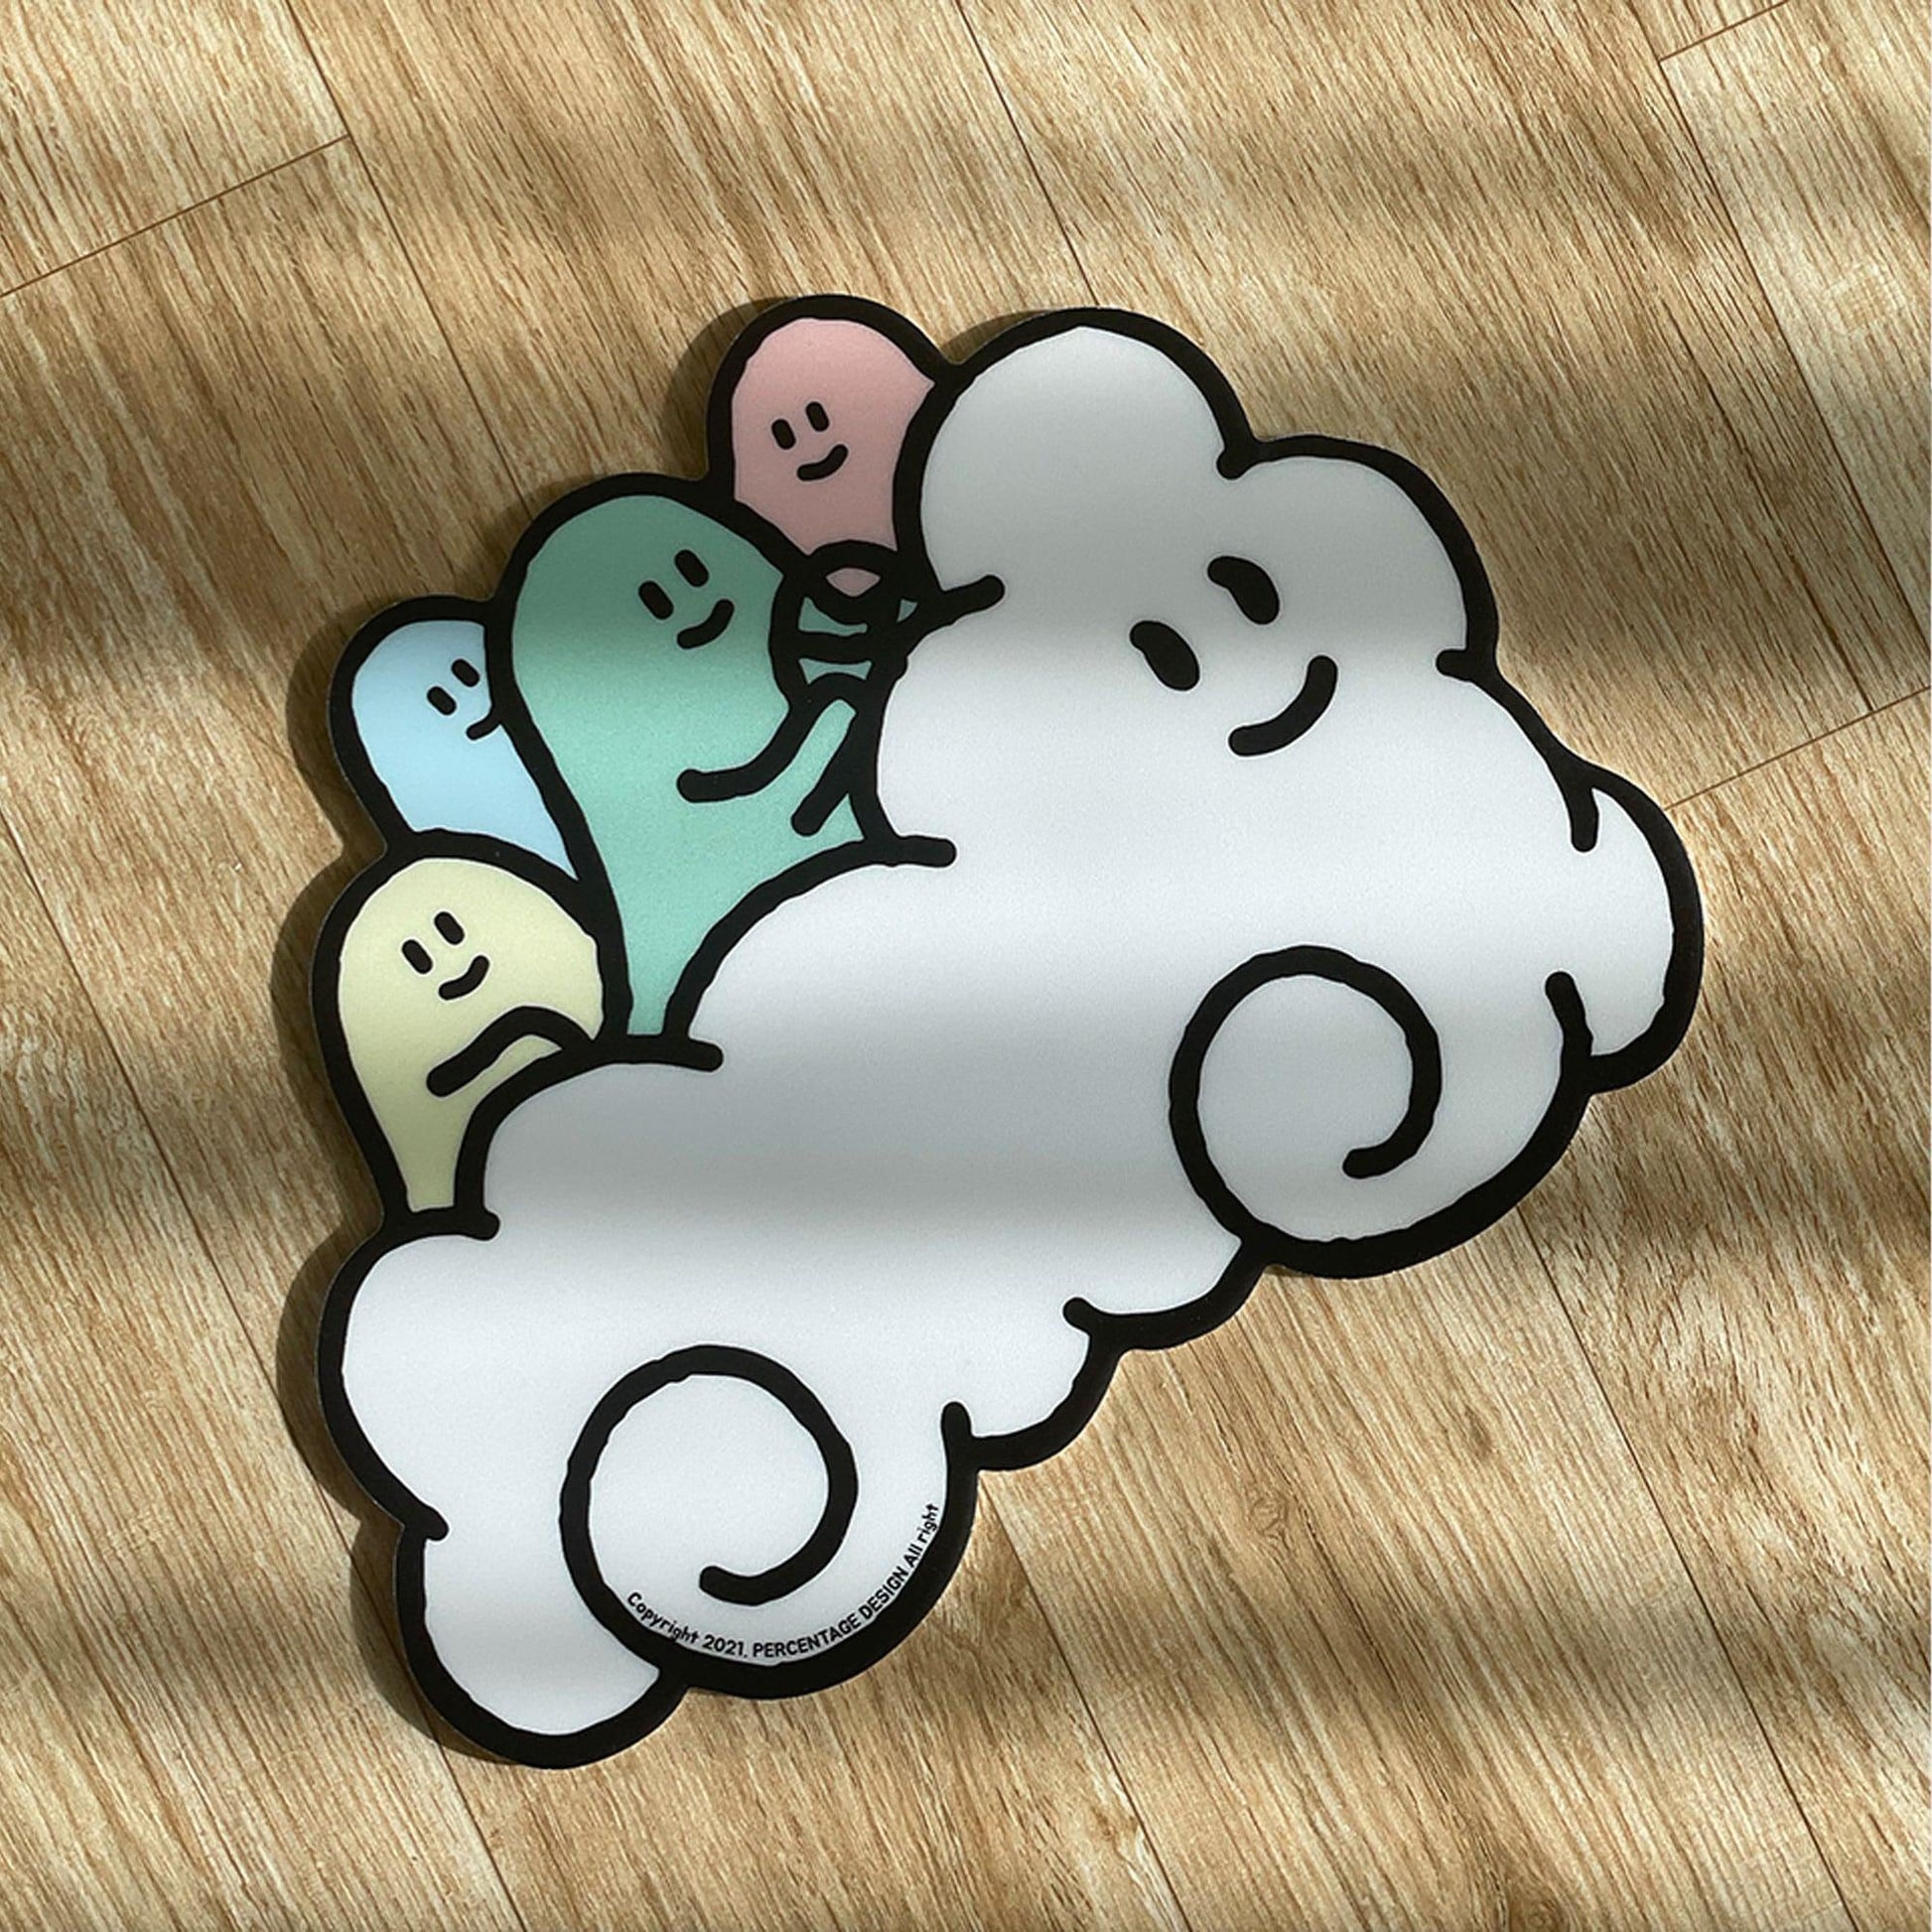 Percentage/Design p/d 幽靈大軍 Ghost Cloud Mouse Pad 滑鼠墊 - SOUL SIMPLE HK